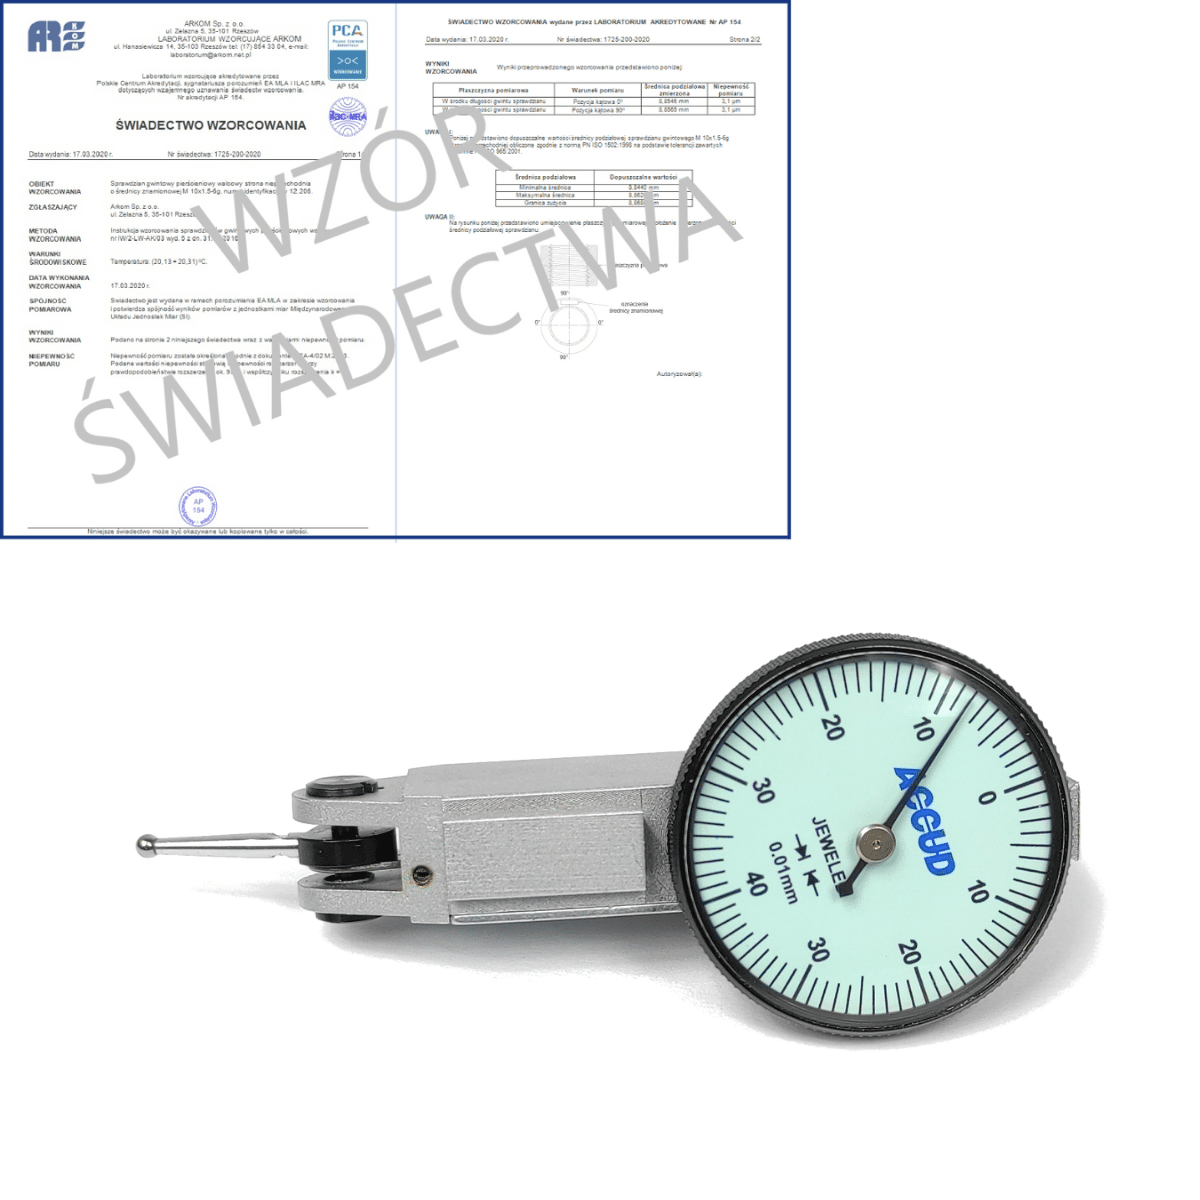 ACCUD czujnik dźwigniowo-zębaty poziomy 0-0.8/0.01 mm + świadectwo wzorcowania PCA 261-008-11 WZORC